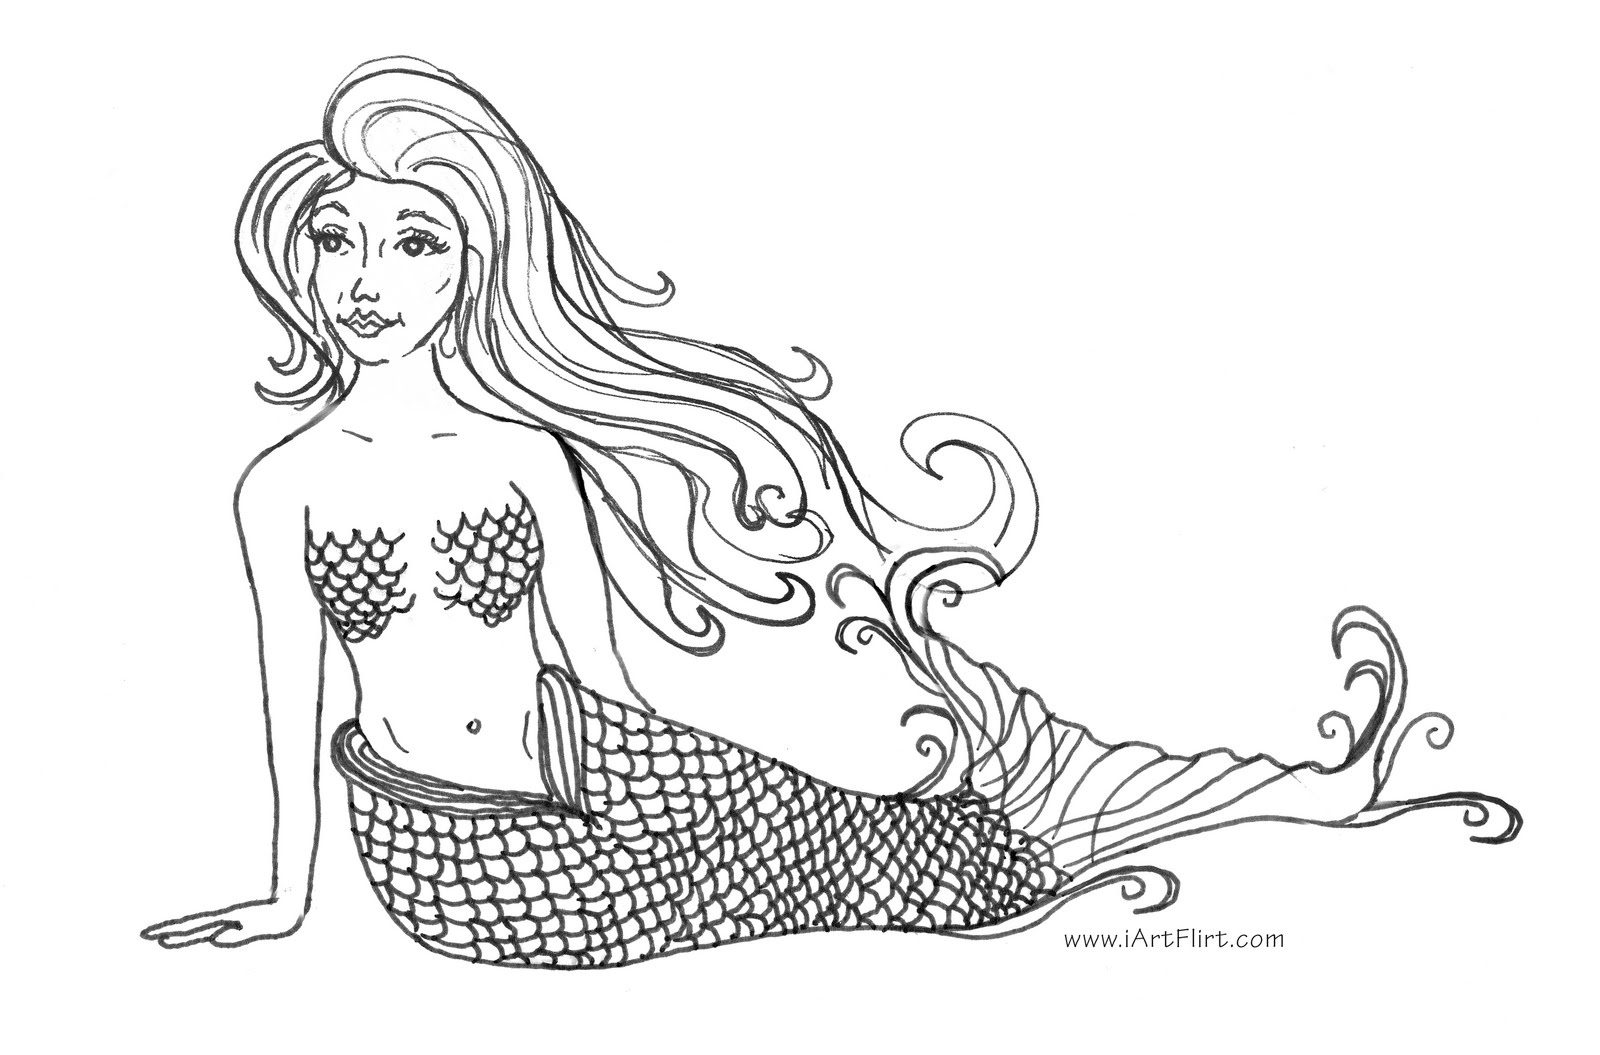 mermaid printable coloring pages free printable mermaid coloring pages for kids pages coloring mermaid printable 